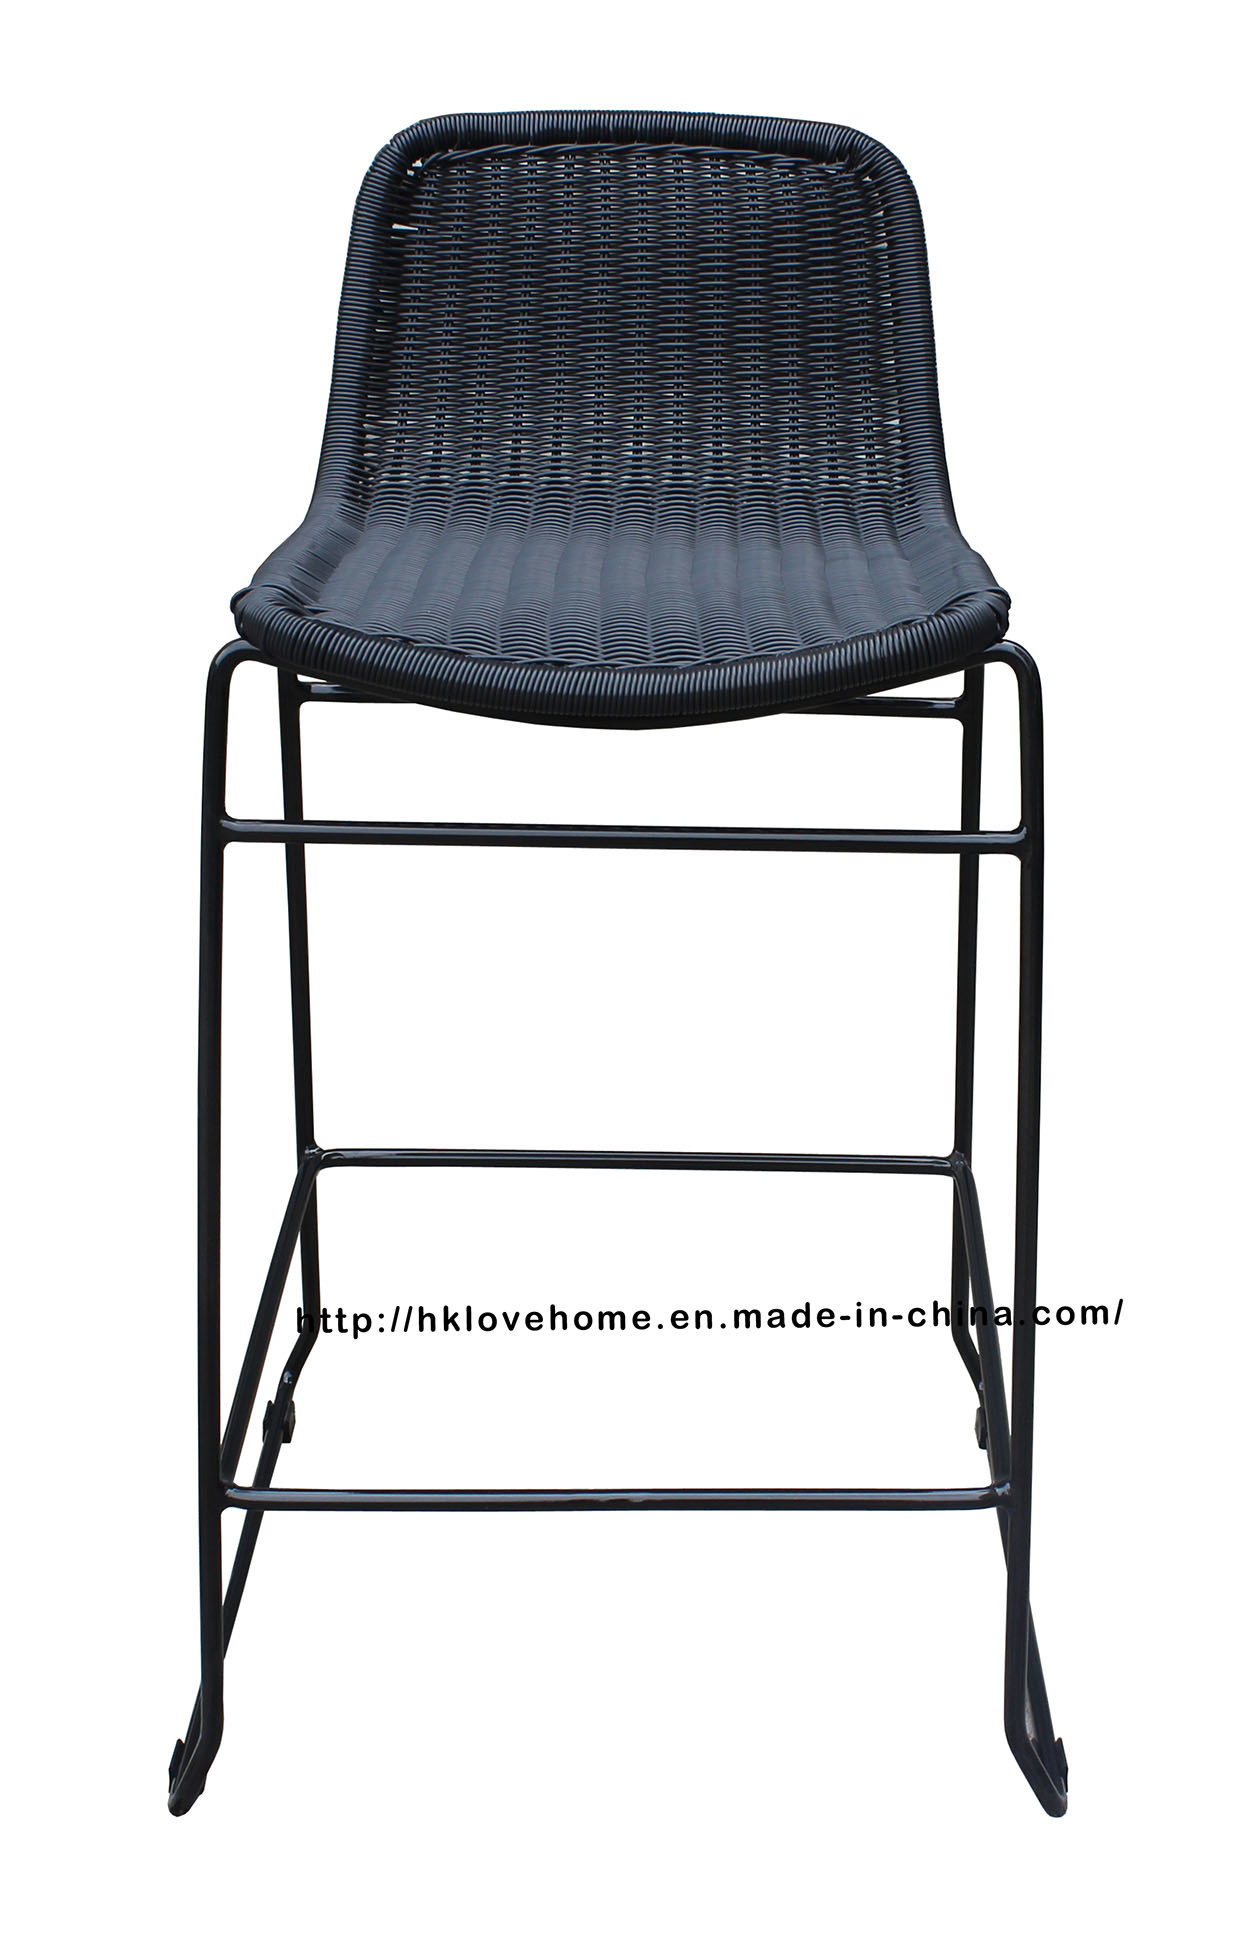 Replica Outdoor Indoor Leisure Metal Furniture Rattan Bar Chair